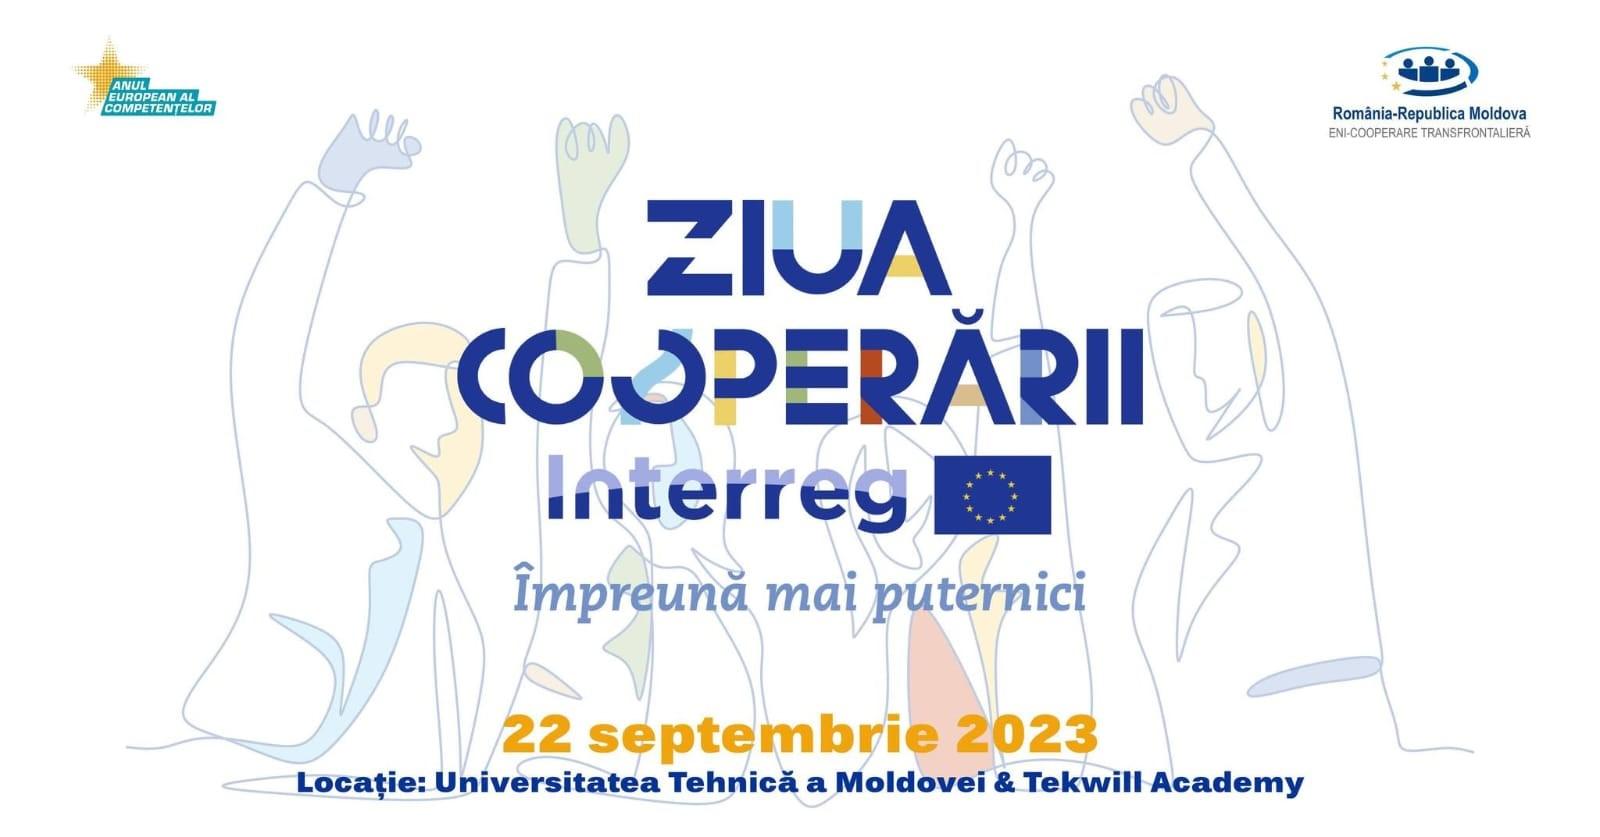 Ziua Cooperării Interreg 2023: Programul România-Republica Moldova investește în dezvoltarea competențelor